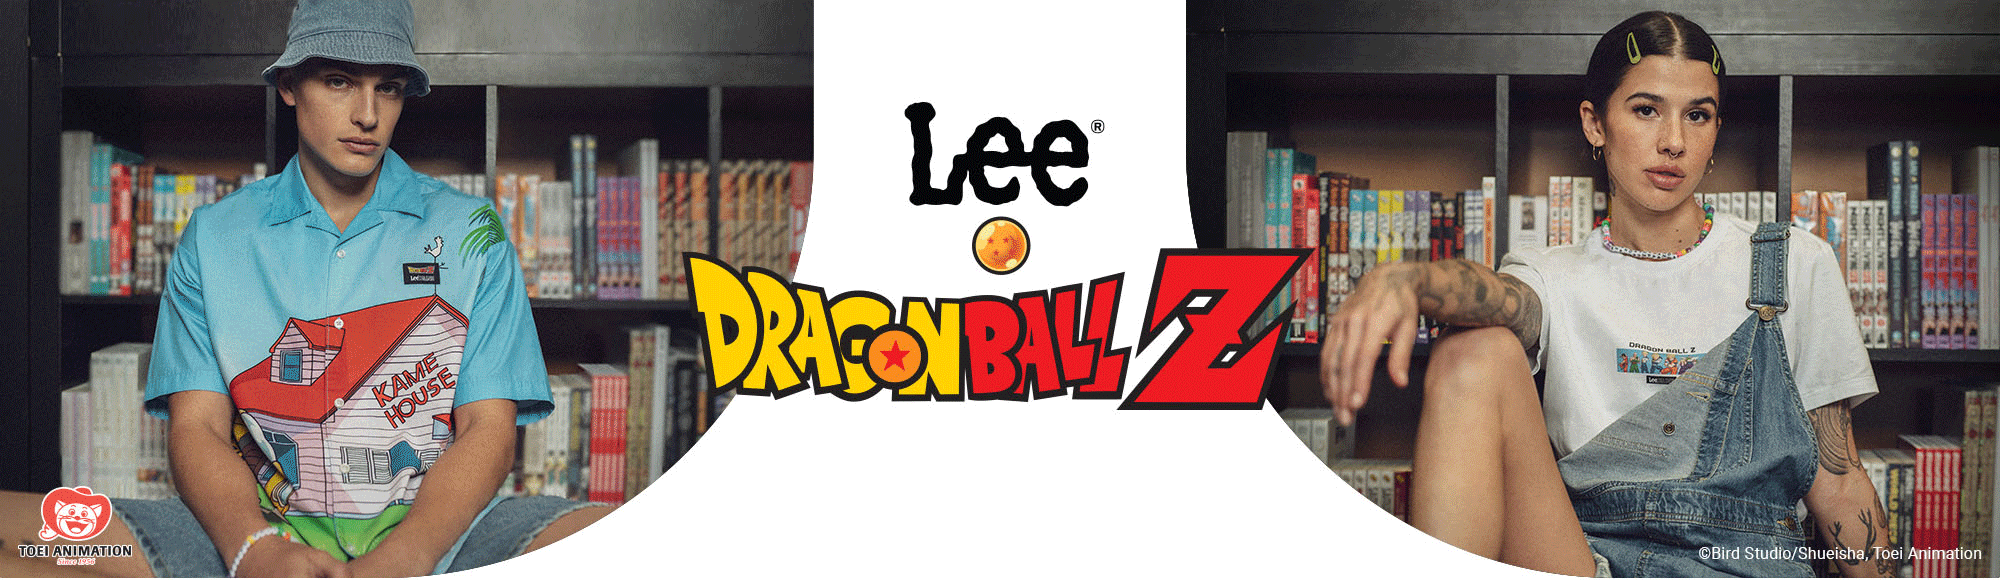 Top Dragon ball Z  Outfits, Clothes, Dragon ball z